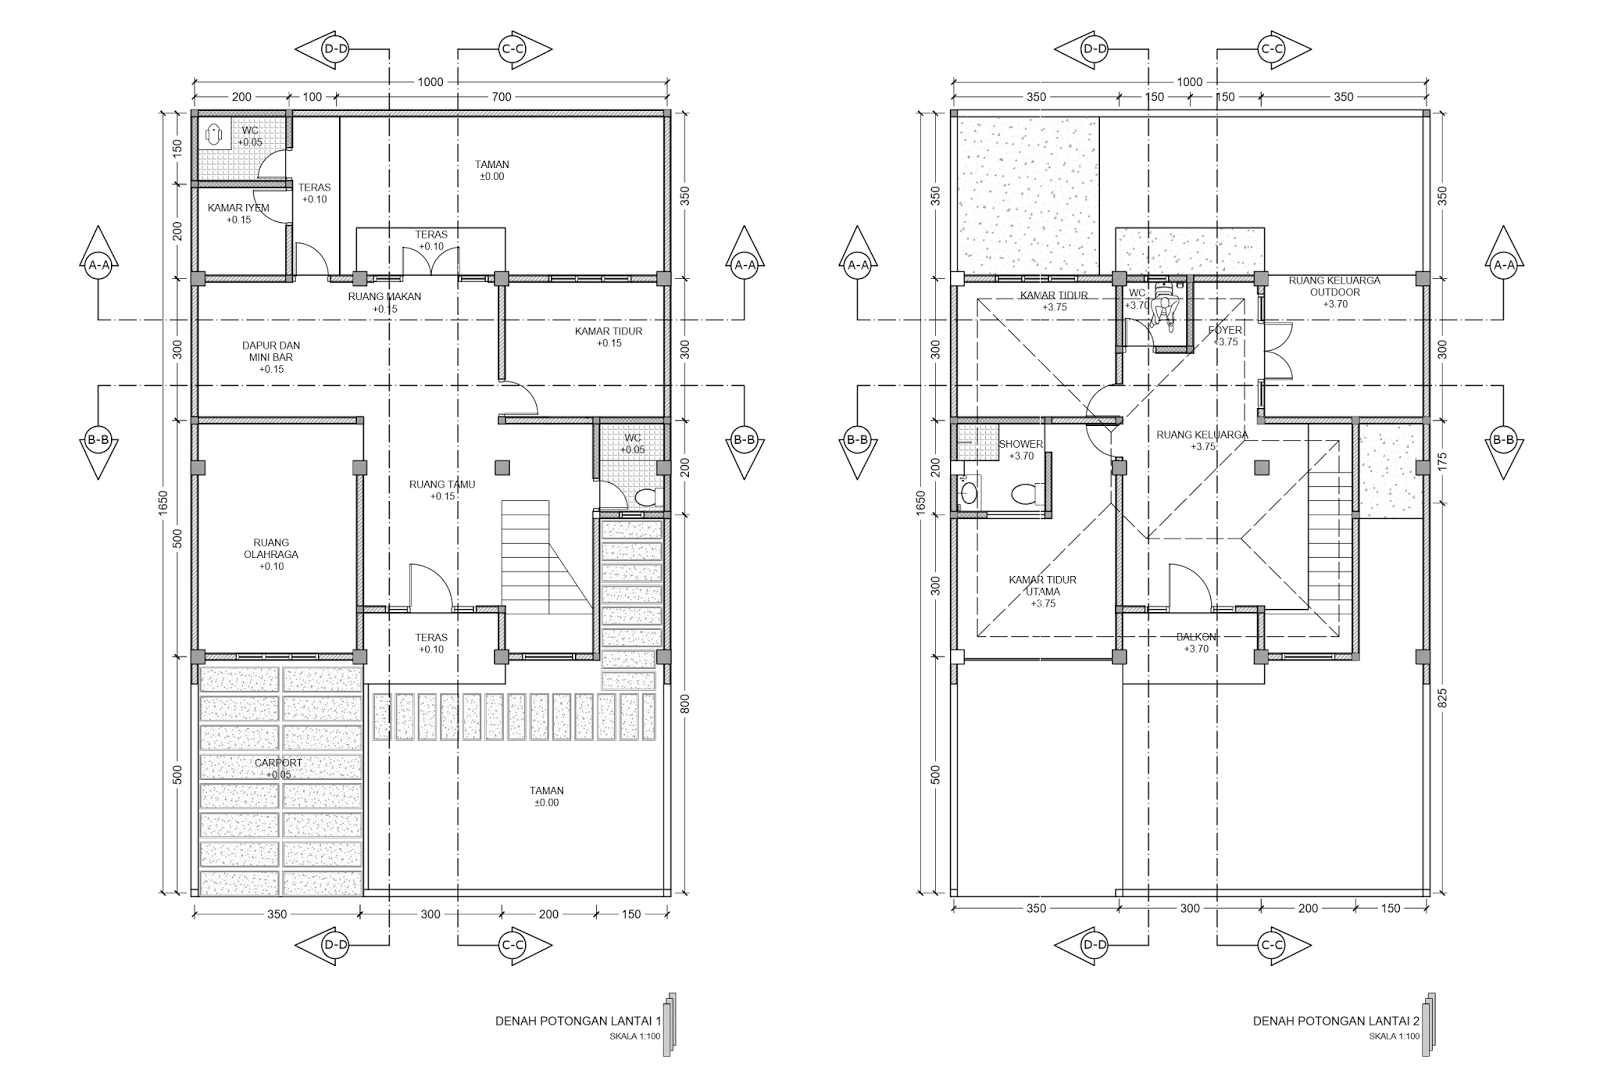 Desain Rumah Minimalis Format Autocad Kumpulan Desain Rumah